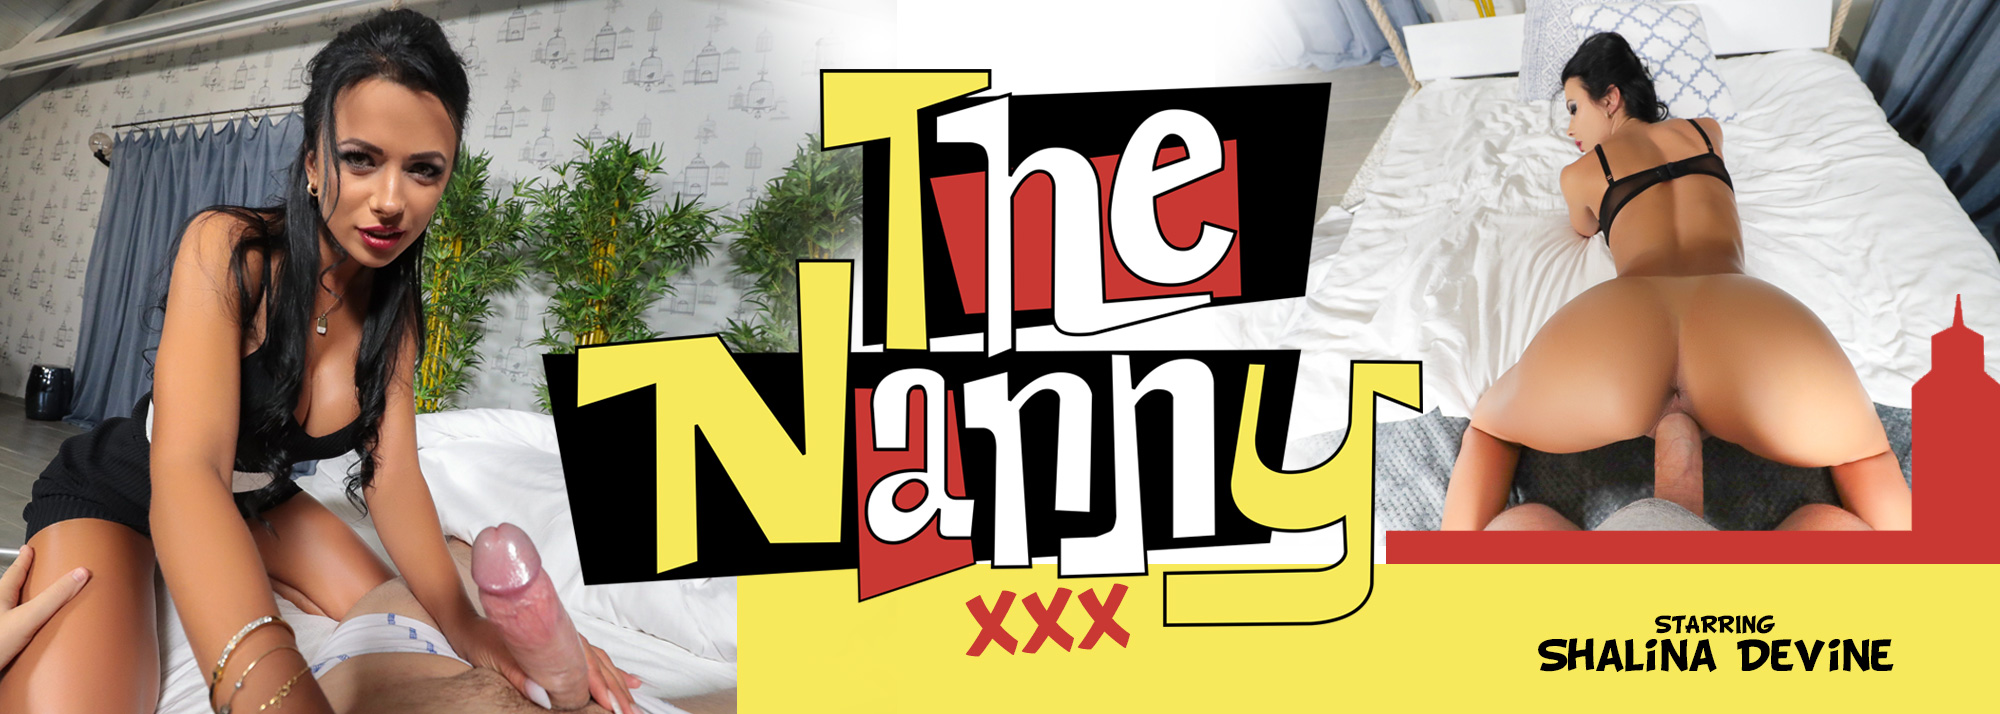 The Nanny XXX - VR Porn Video, Starring Shalina Devine VR